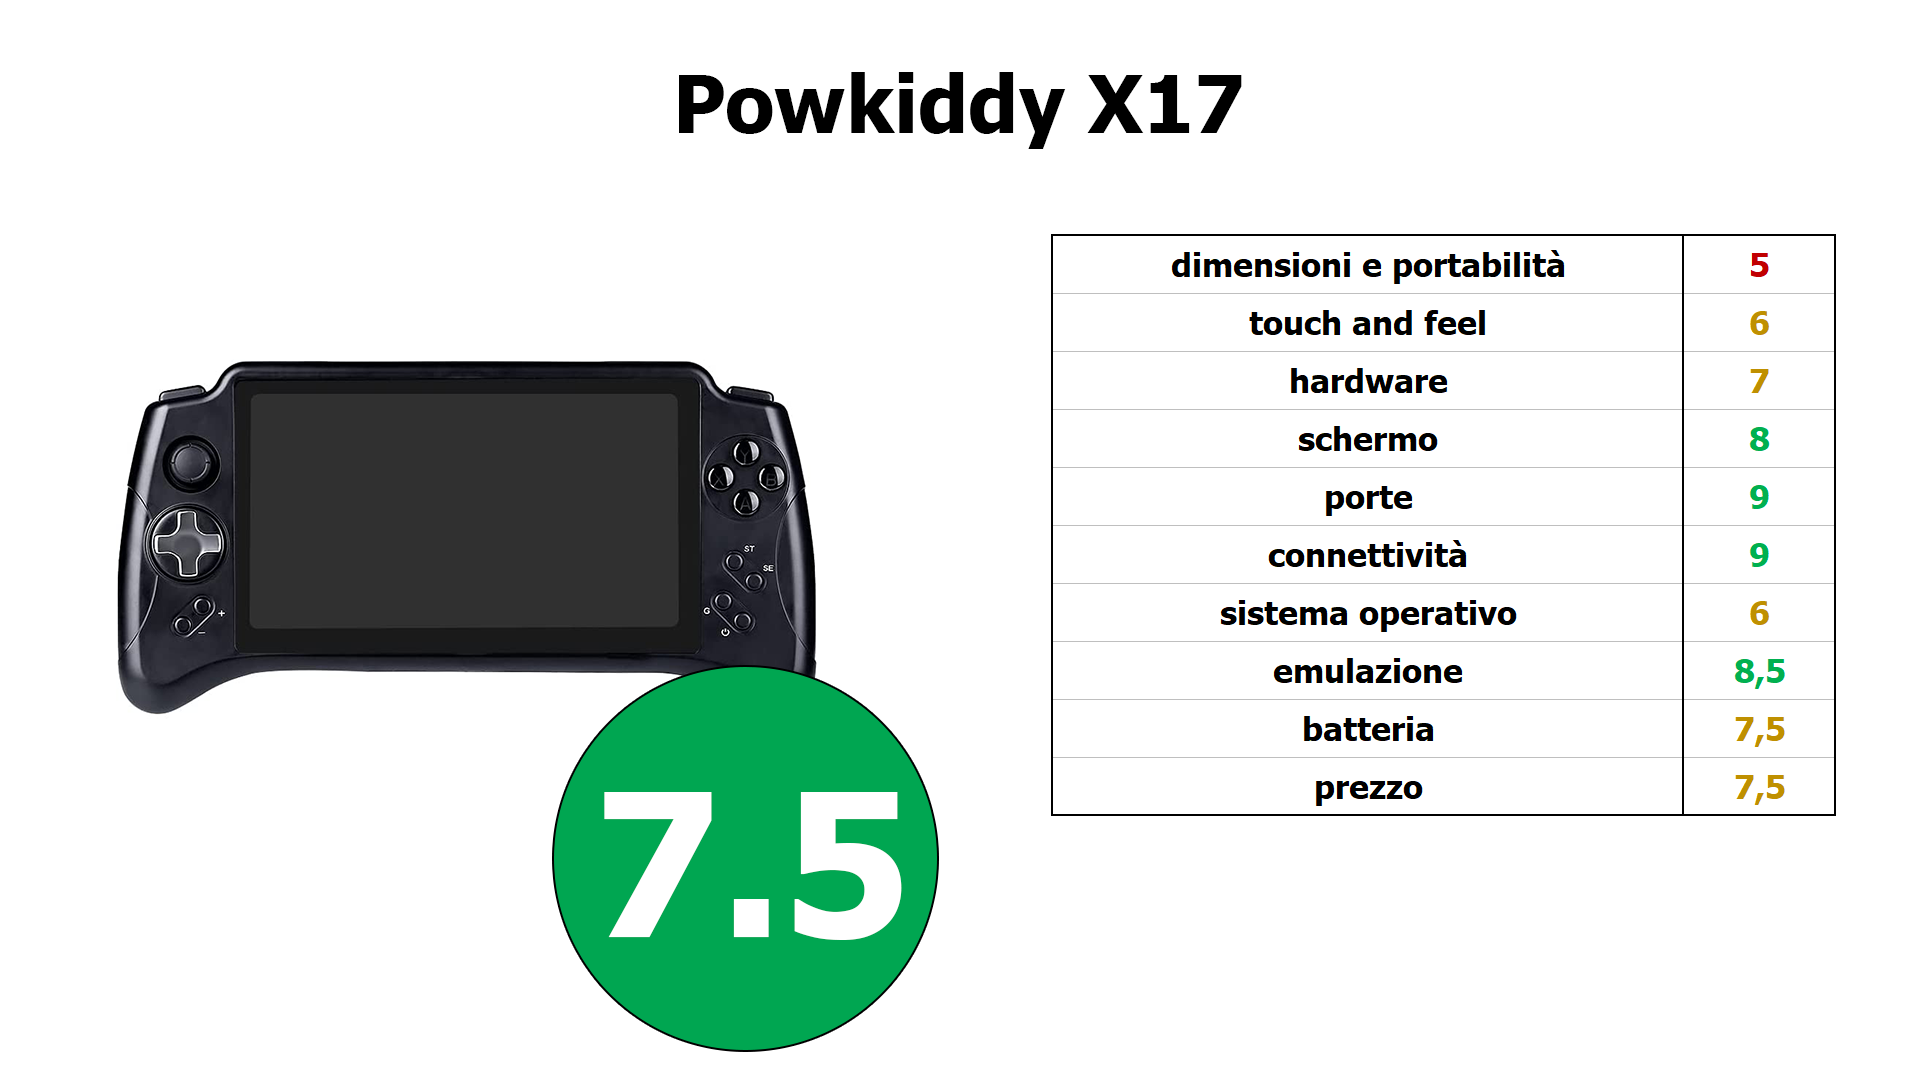 powkiddyx17 voto